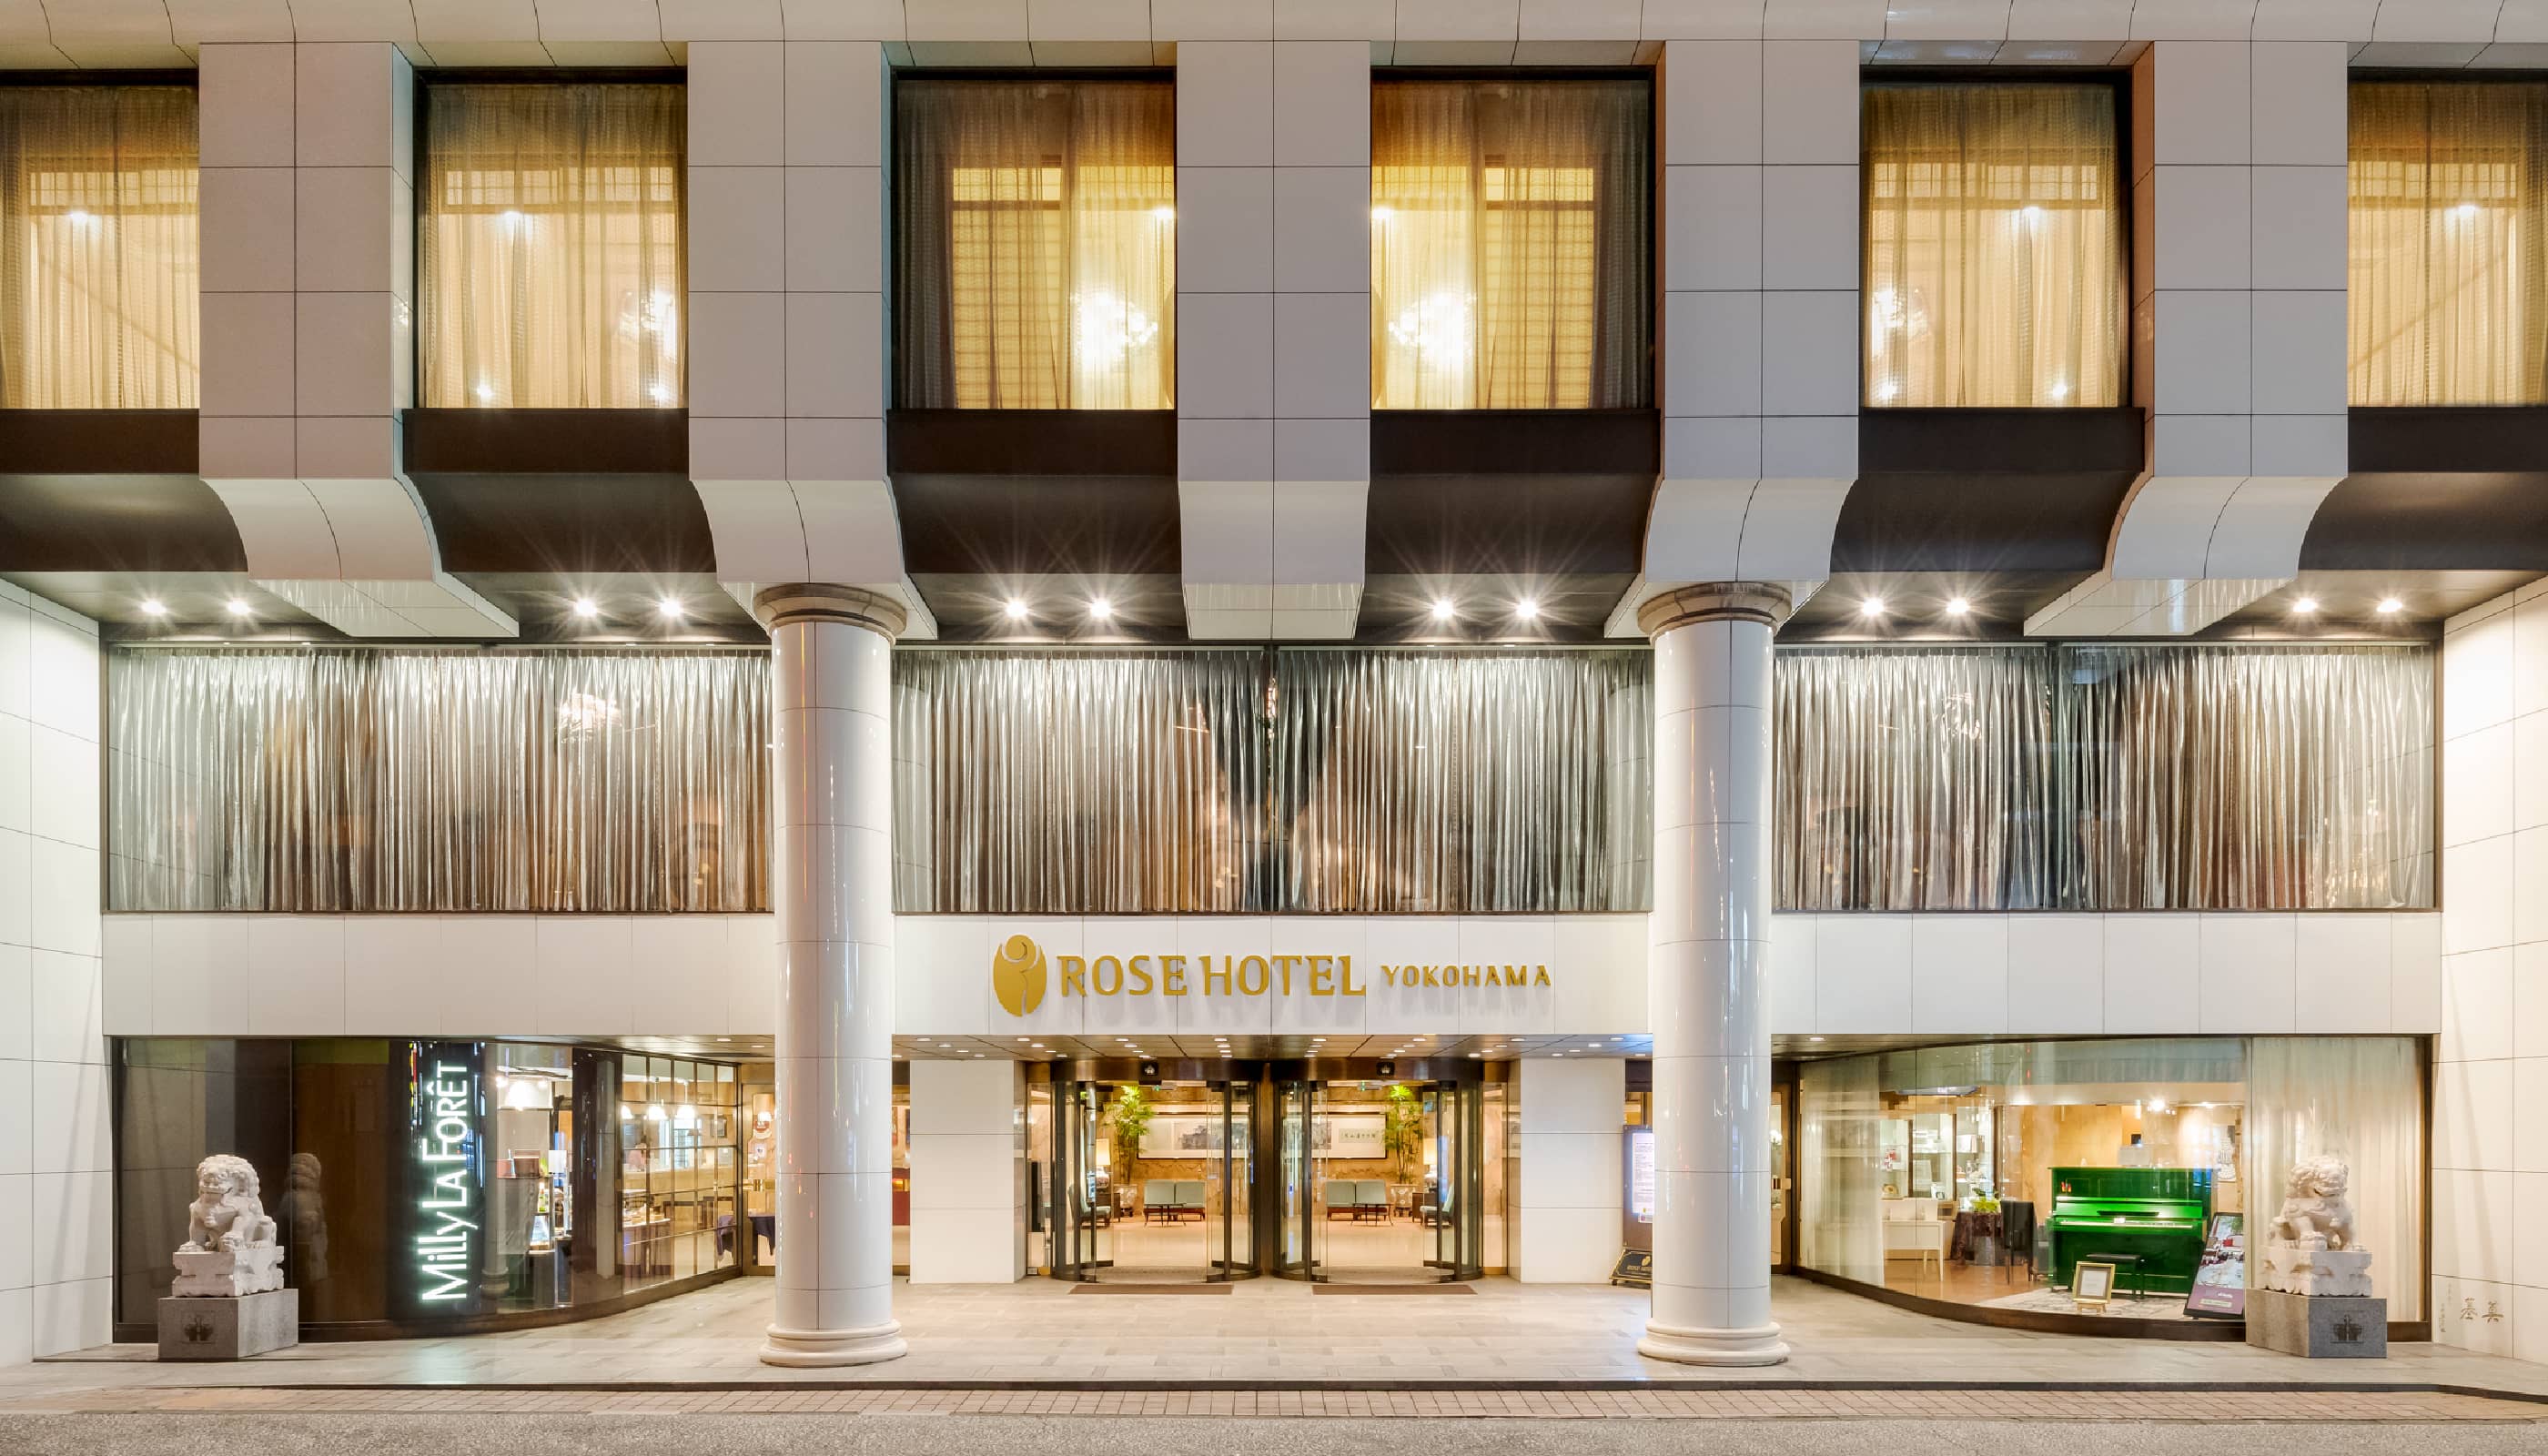 Rose Hotel Yokohama